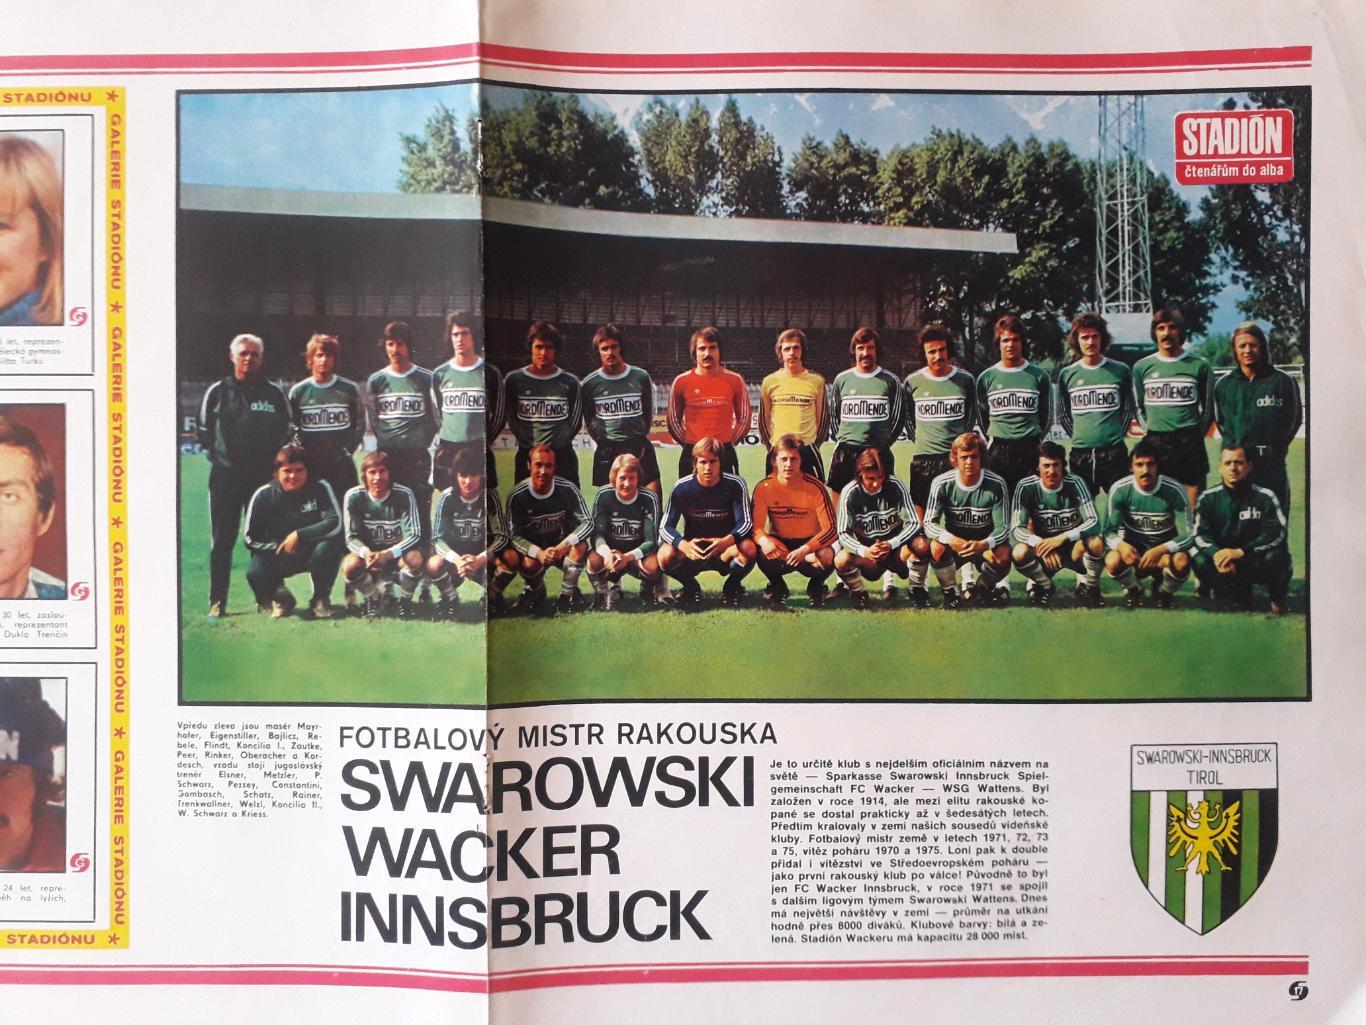 Постер из журнала Stadion- Innsbruck